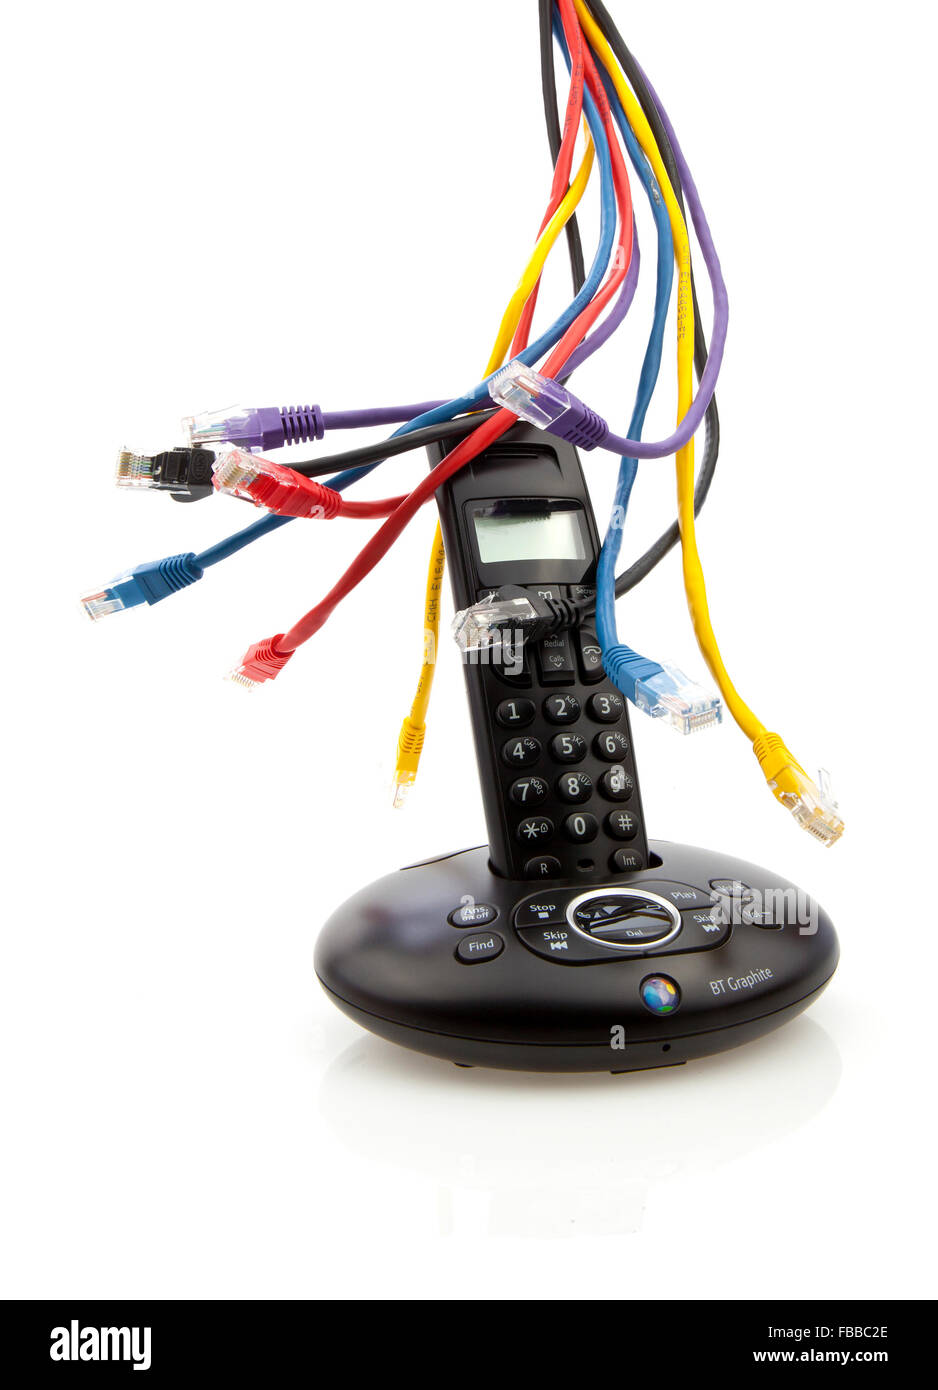 Drahtlose schwarz Telefon mit CAT 5-Kabel und Wiege isoliert auf weißem Hintergrund Stockfoto